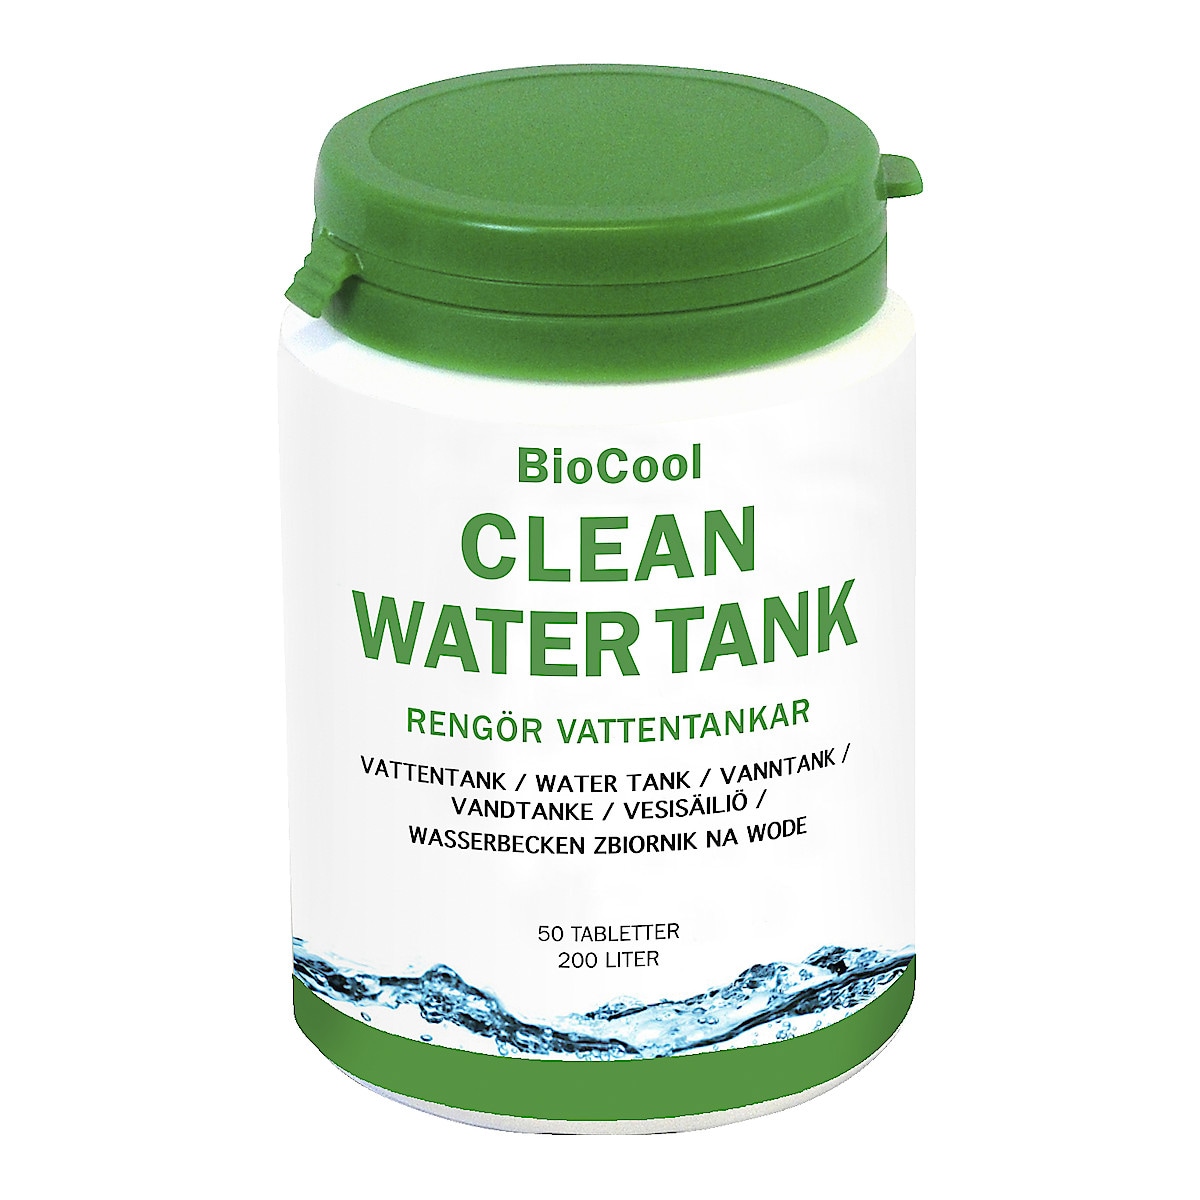 Desinfektion av vattentank BioCool Clean Water Tank